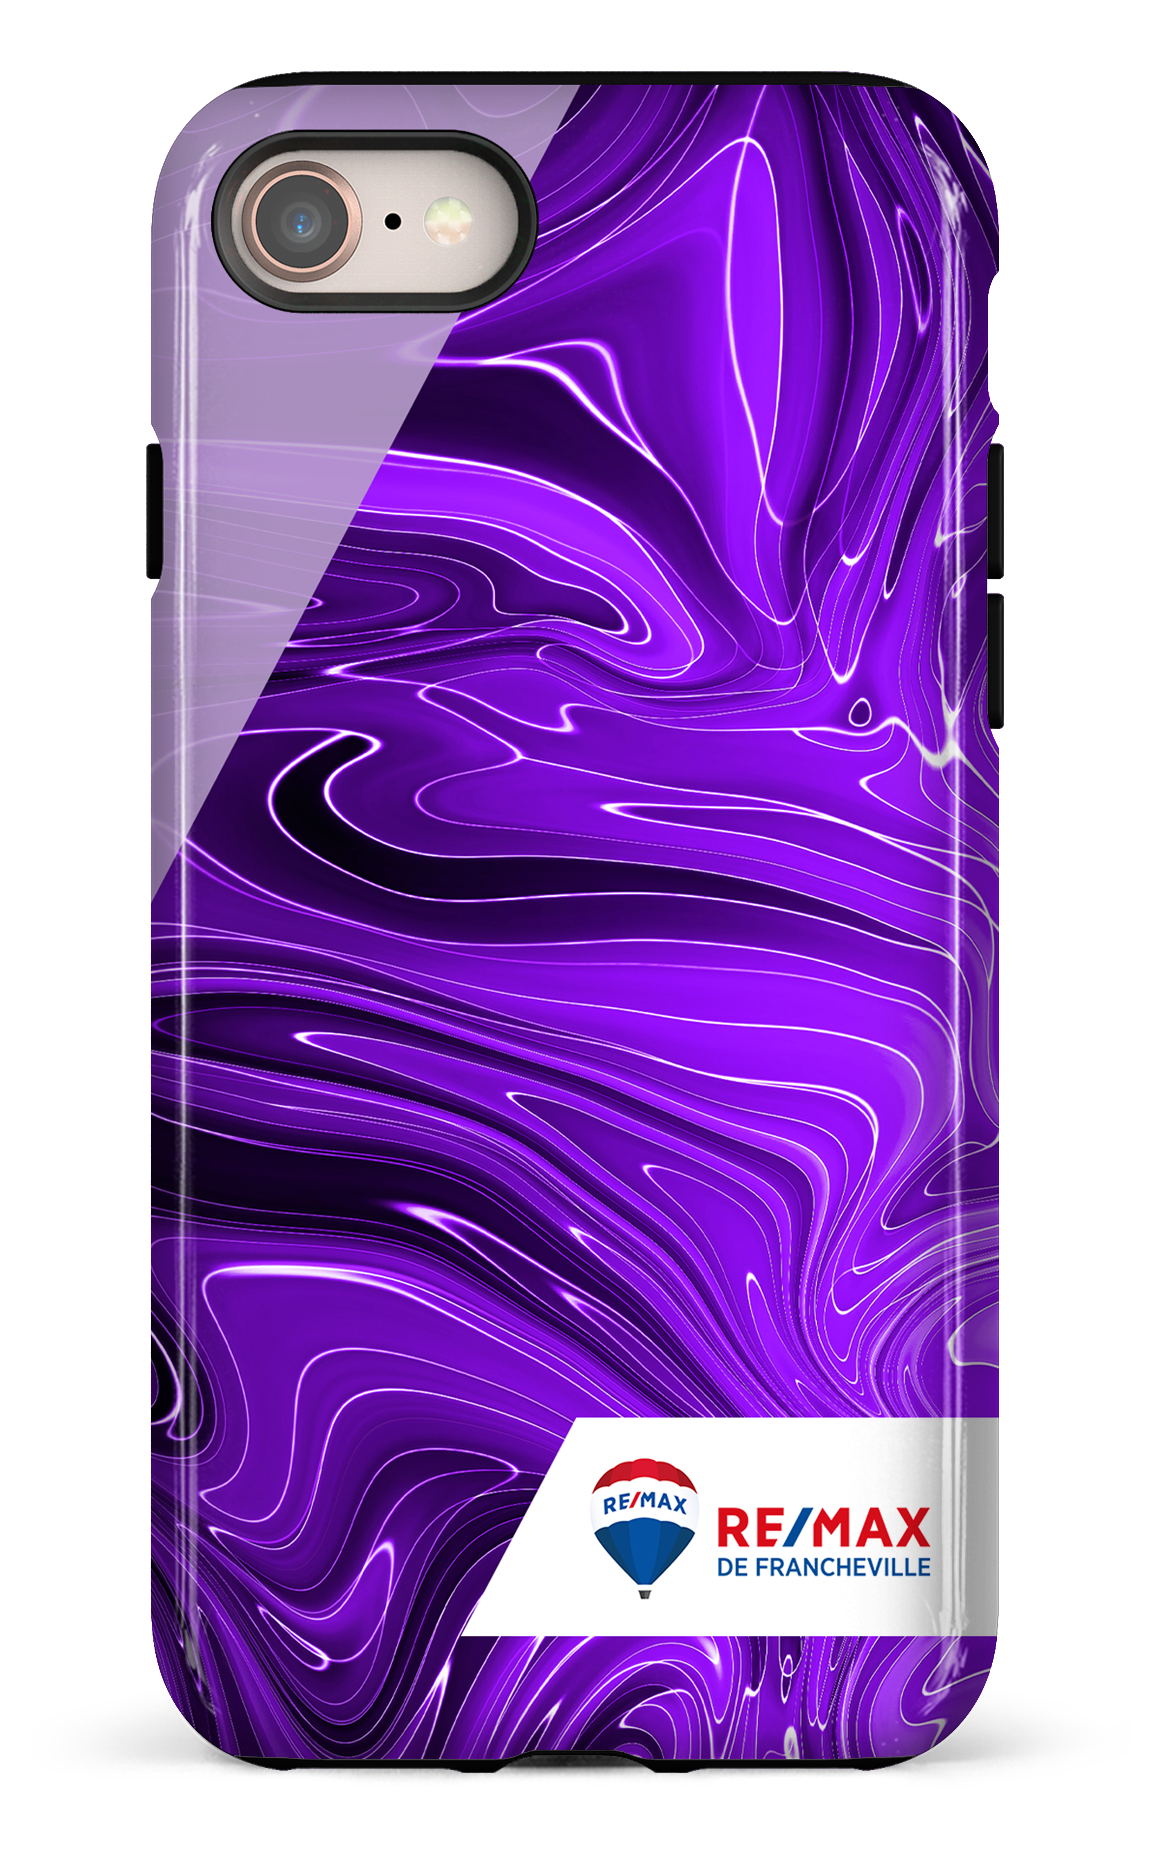 Peinture marbrée sombre violette de Francheville - iPhone 7